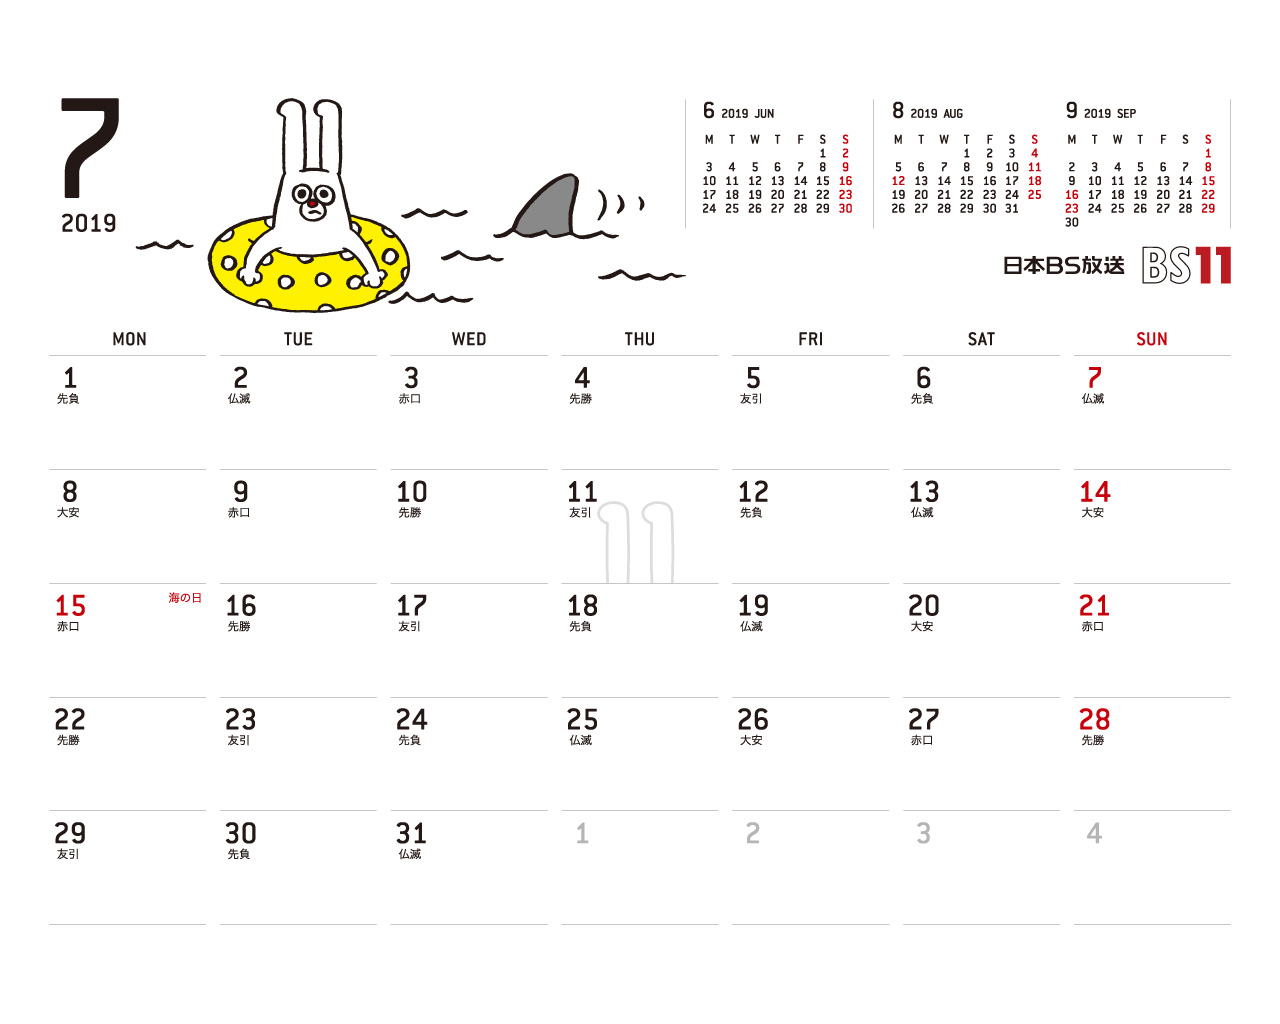 じゅういっちゃんのデジタルカレンダー18年07月 Bs11 イレブン いつでも無料放送